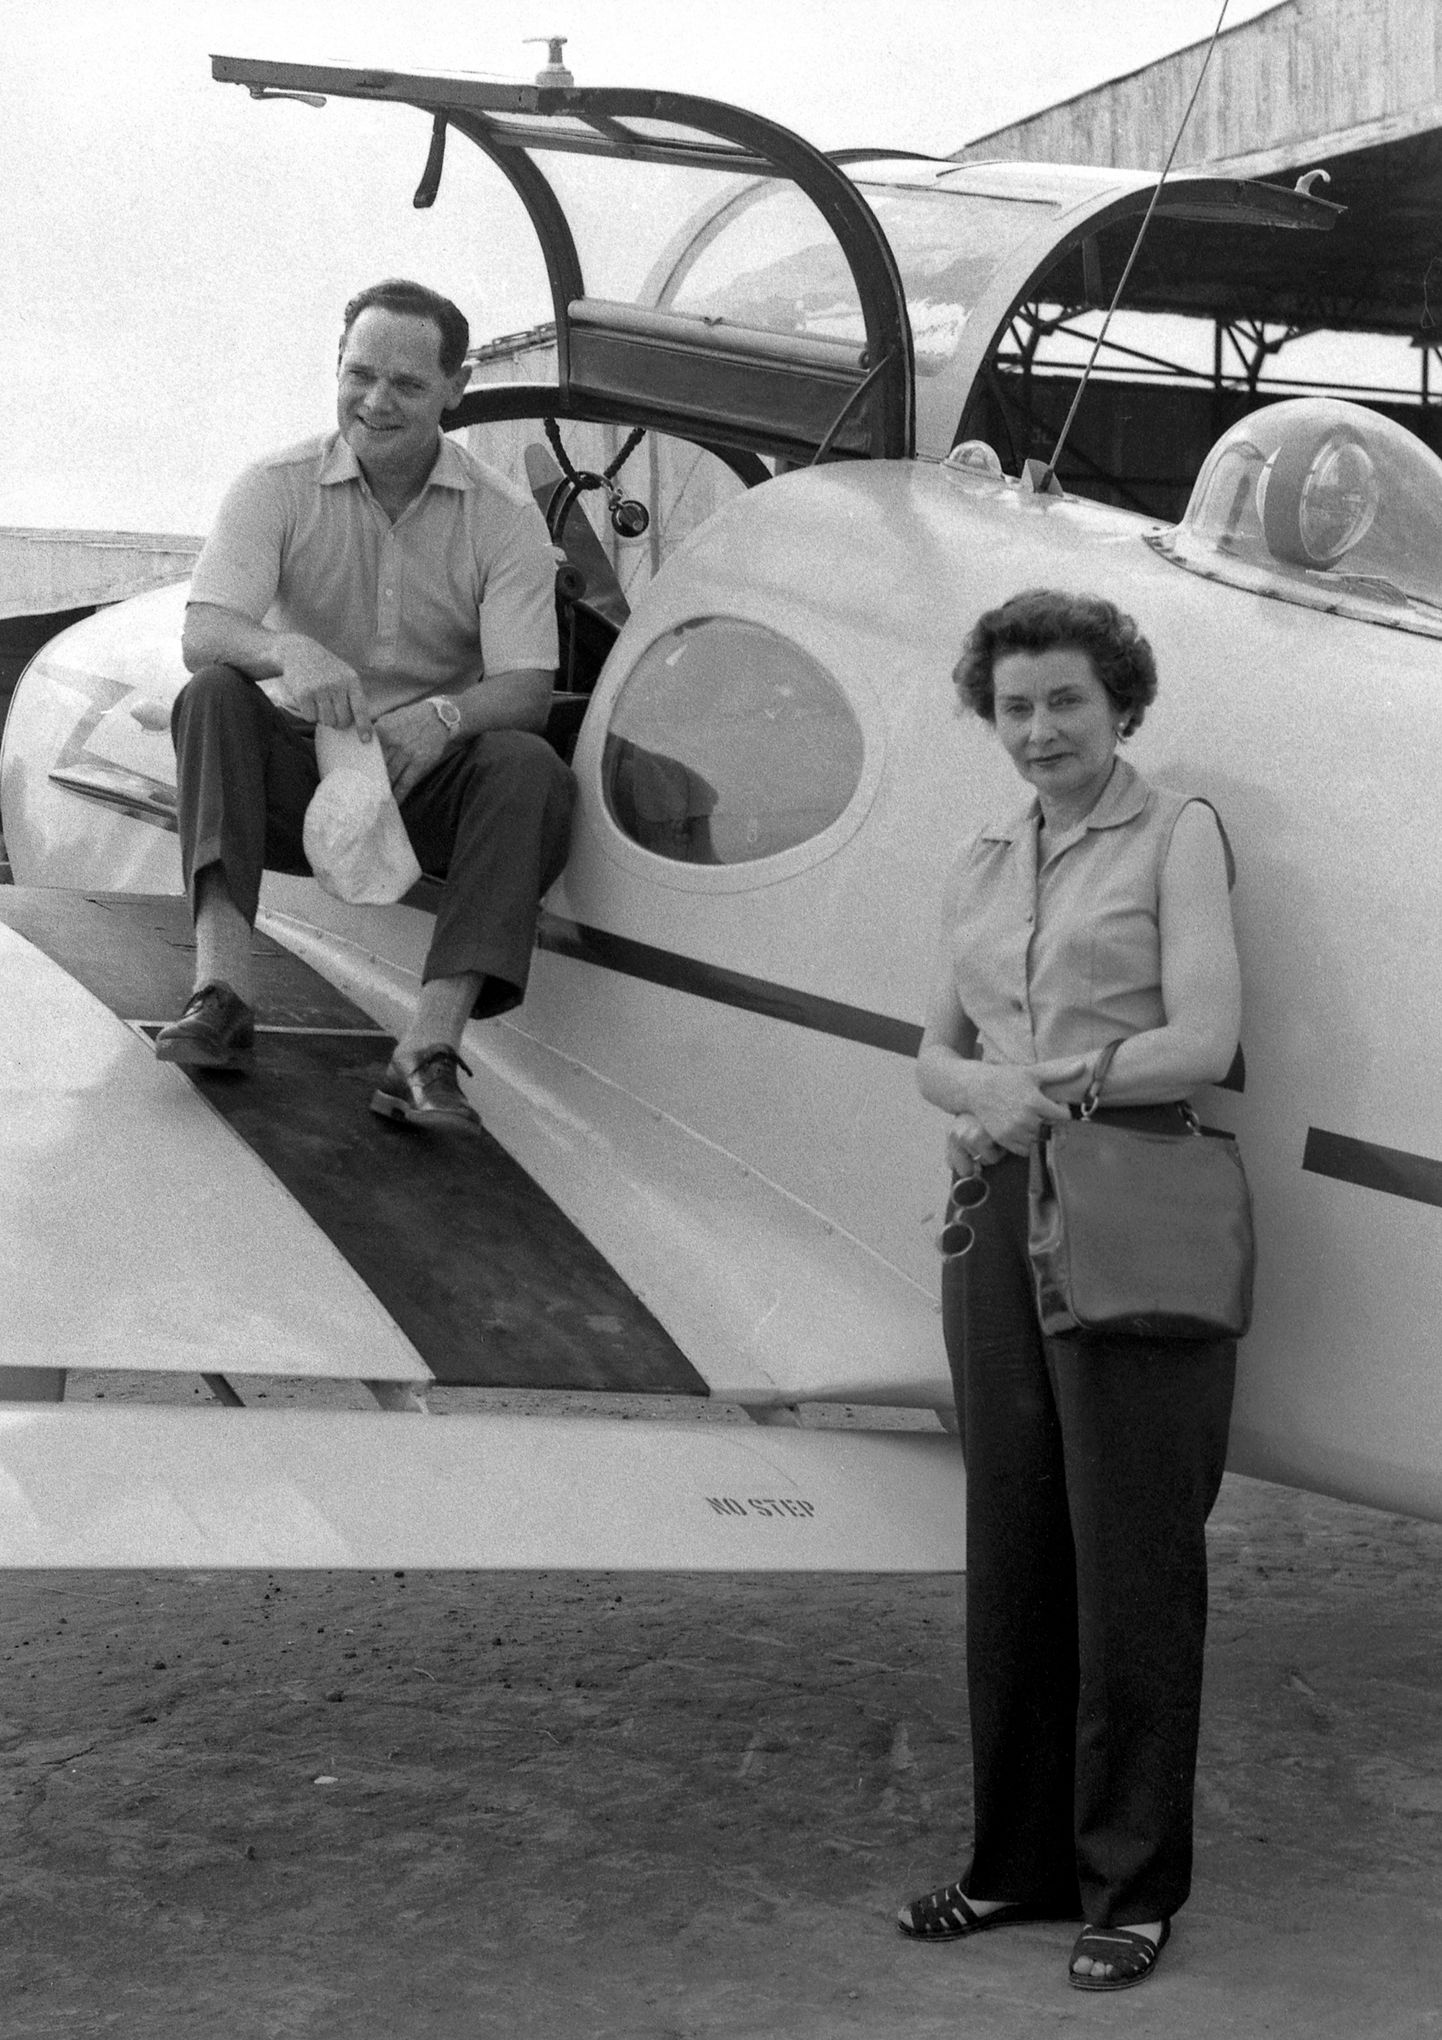 Briti lennuäss Douglas Bader (1910-1982) ja tema abikaasa Sierra Leones 1950ndate lõpus.